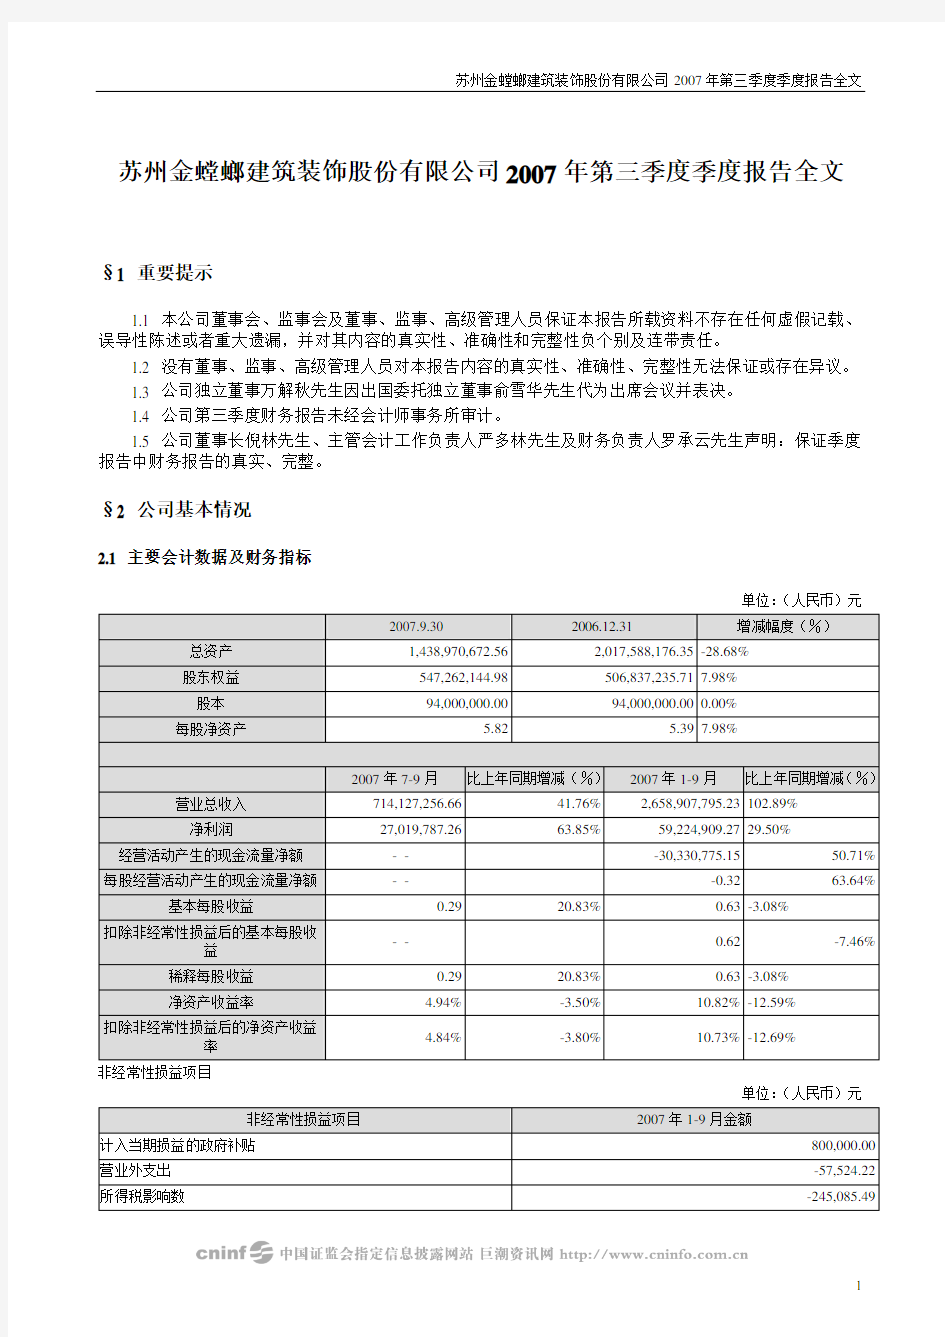 苏州金螳螂建筑装饰股份有限公司2007年第三季度季度报告全文